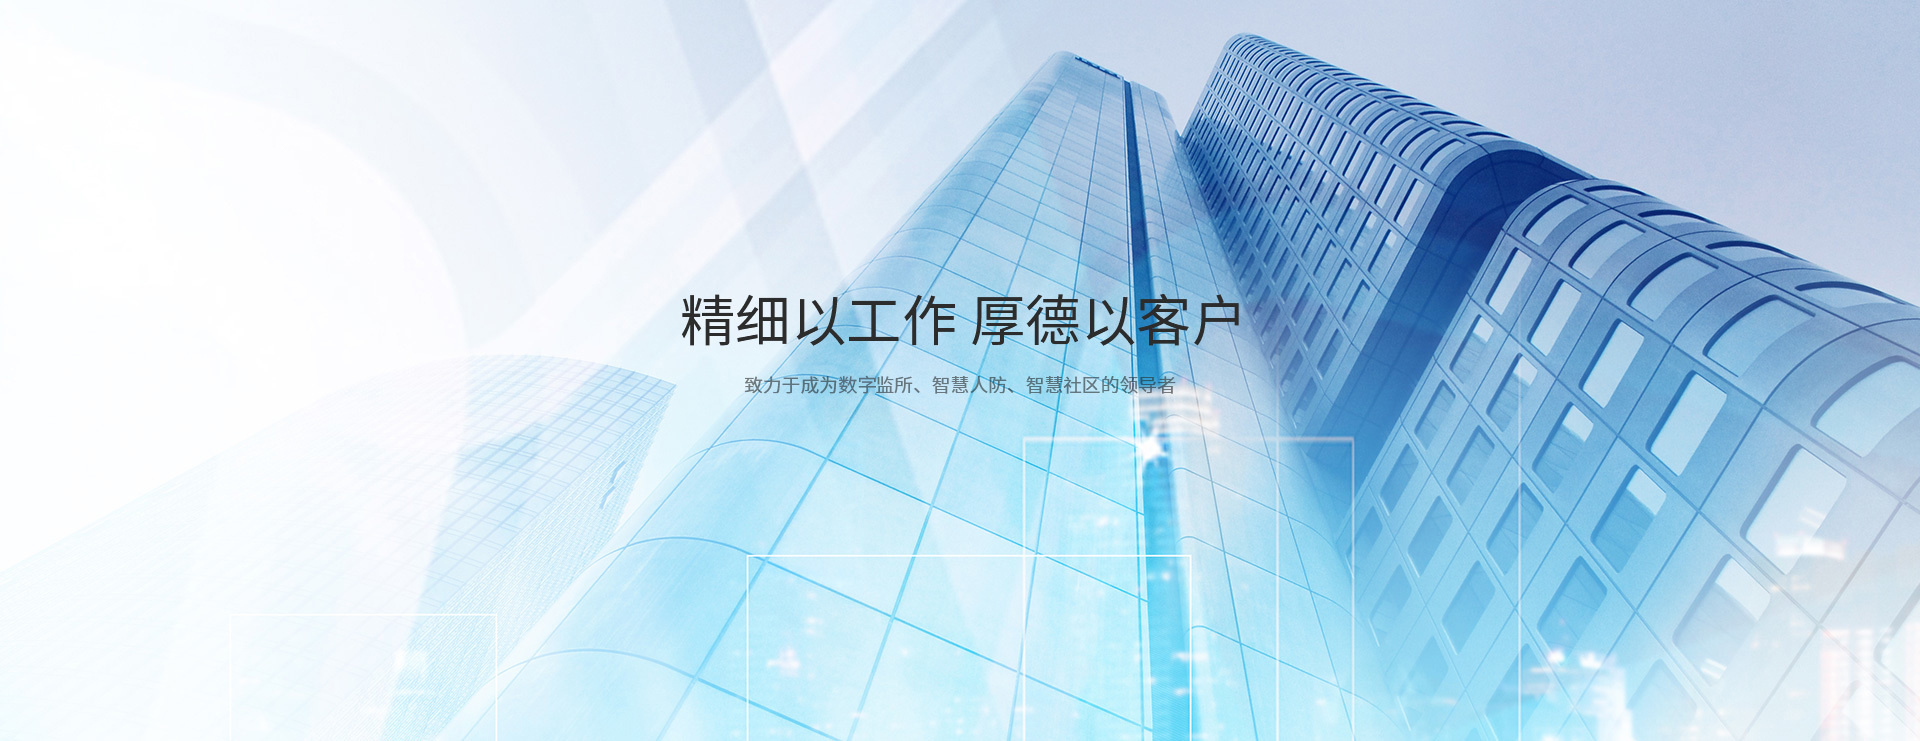 北京中电瑞达电子技术有限公司